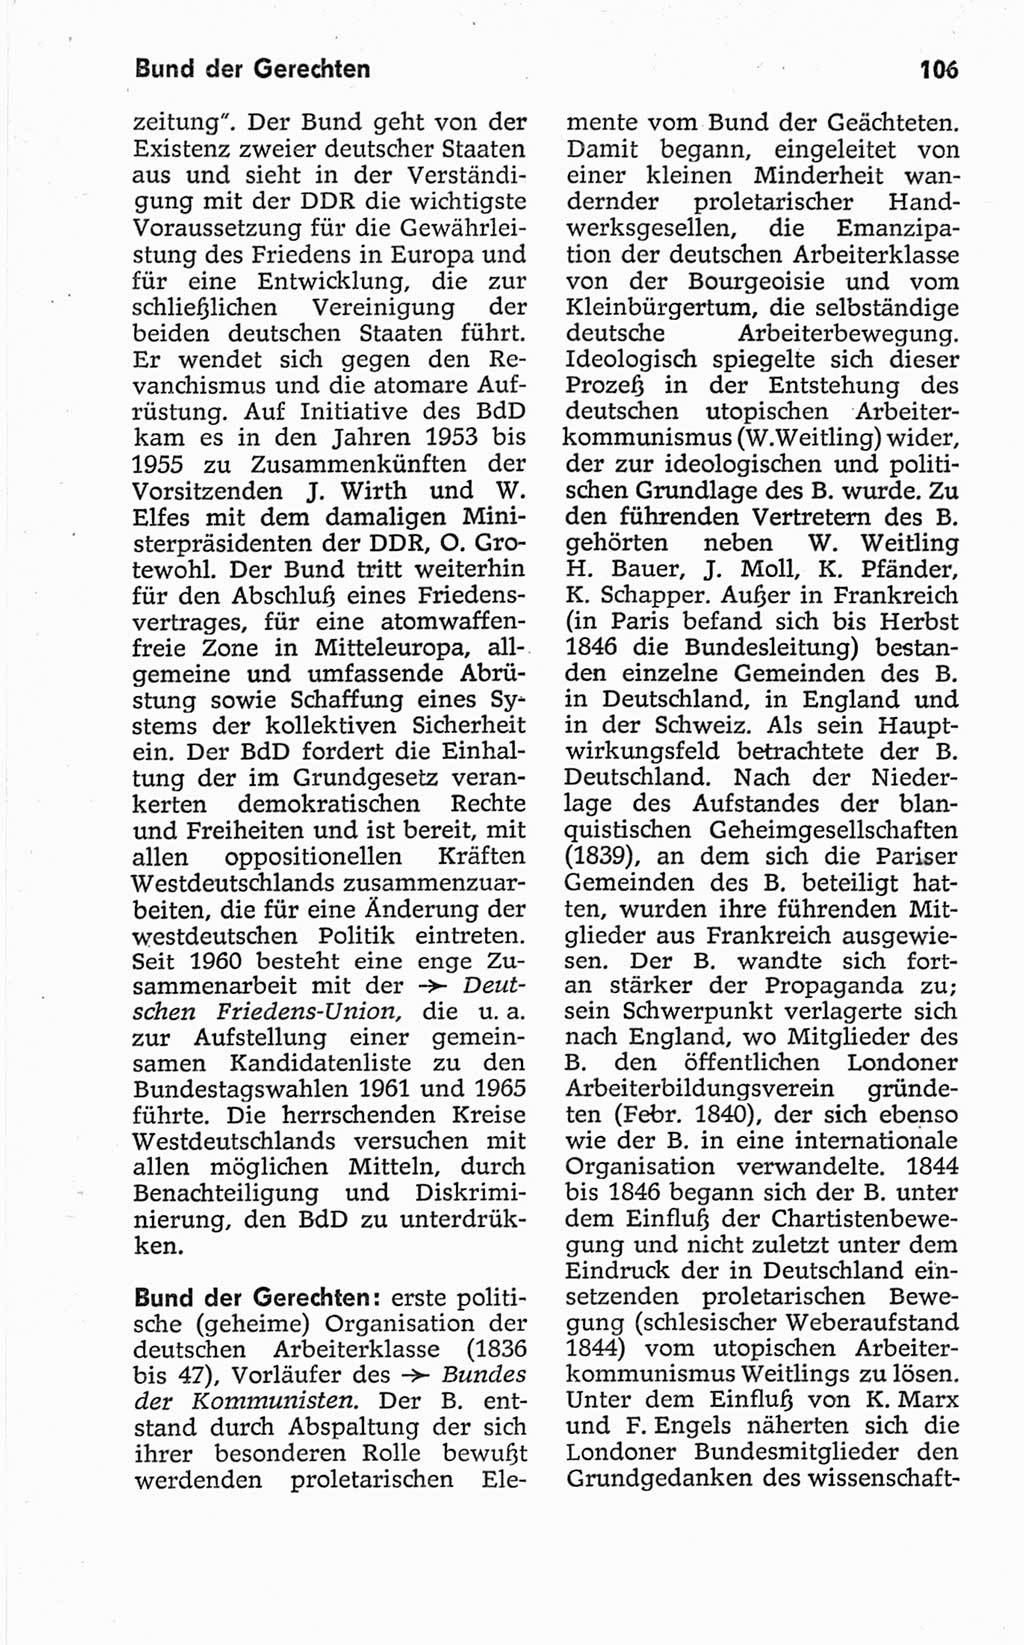 Kleines politisches Wörterbuch [Deutsche Demokratische Republik (DDR)] 1967, Seite 106 (Kl. pol. Wb. DDR 1967, S. 106)